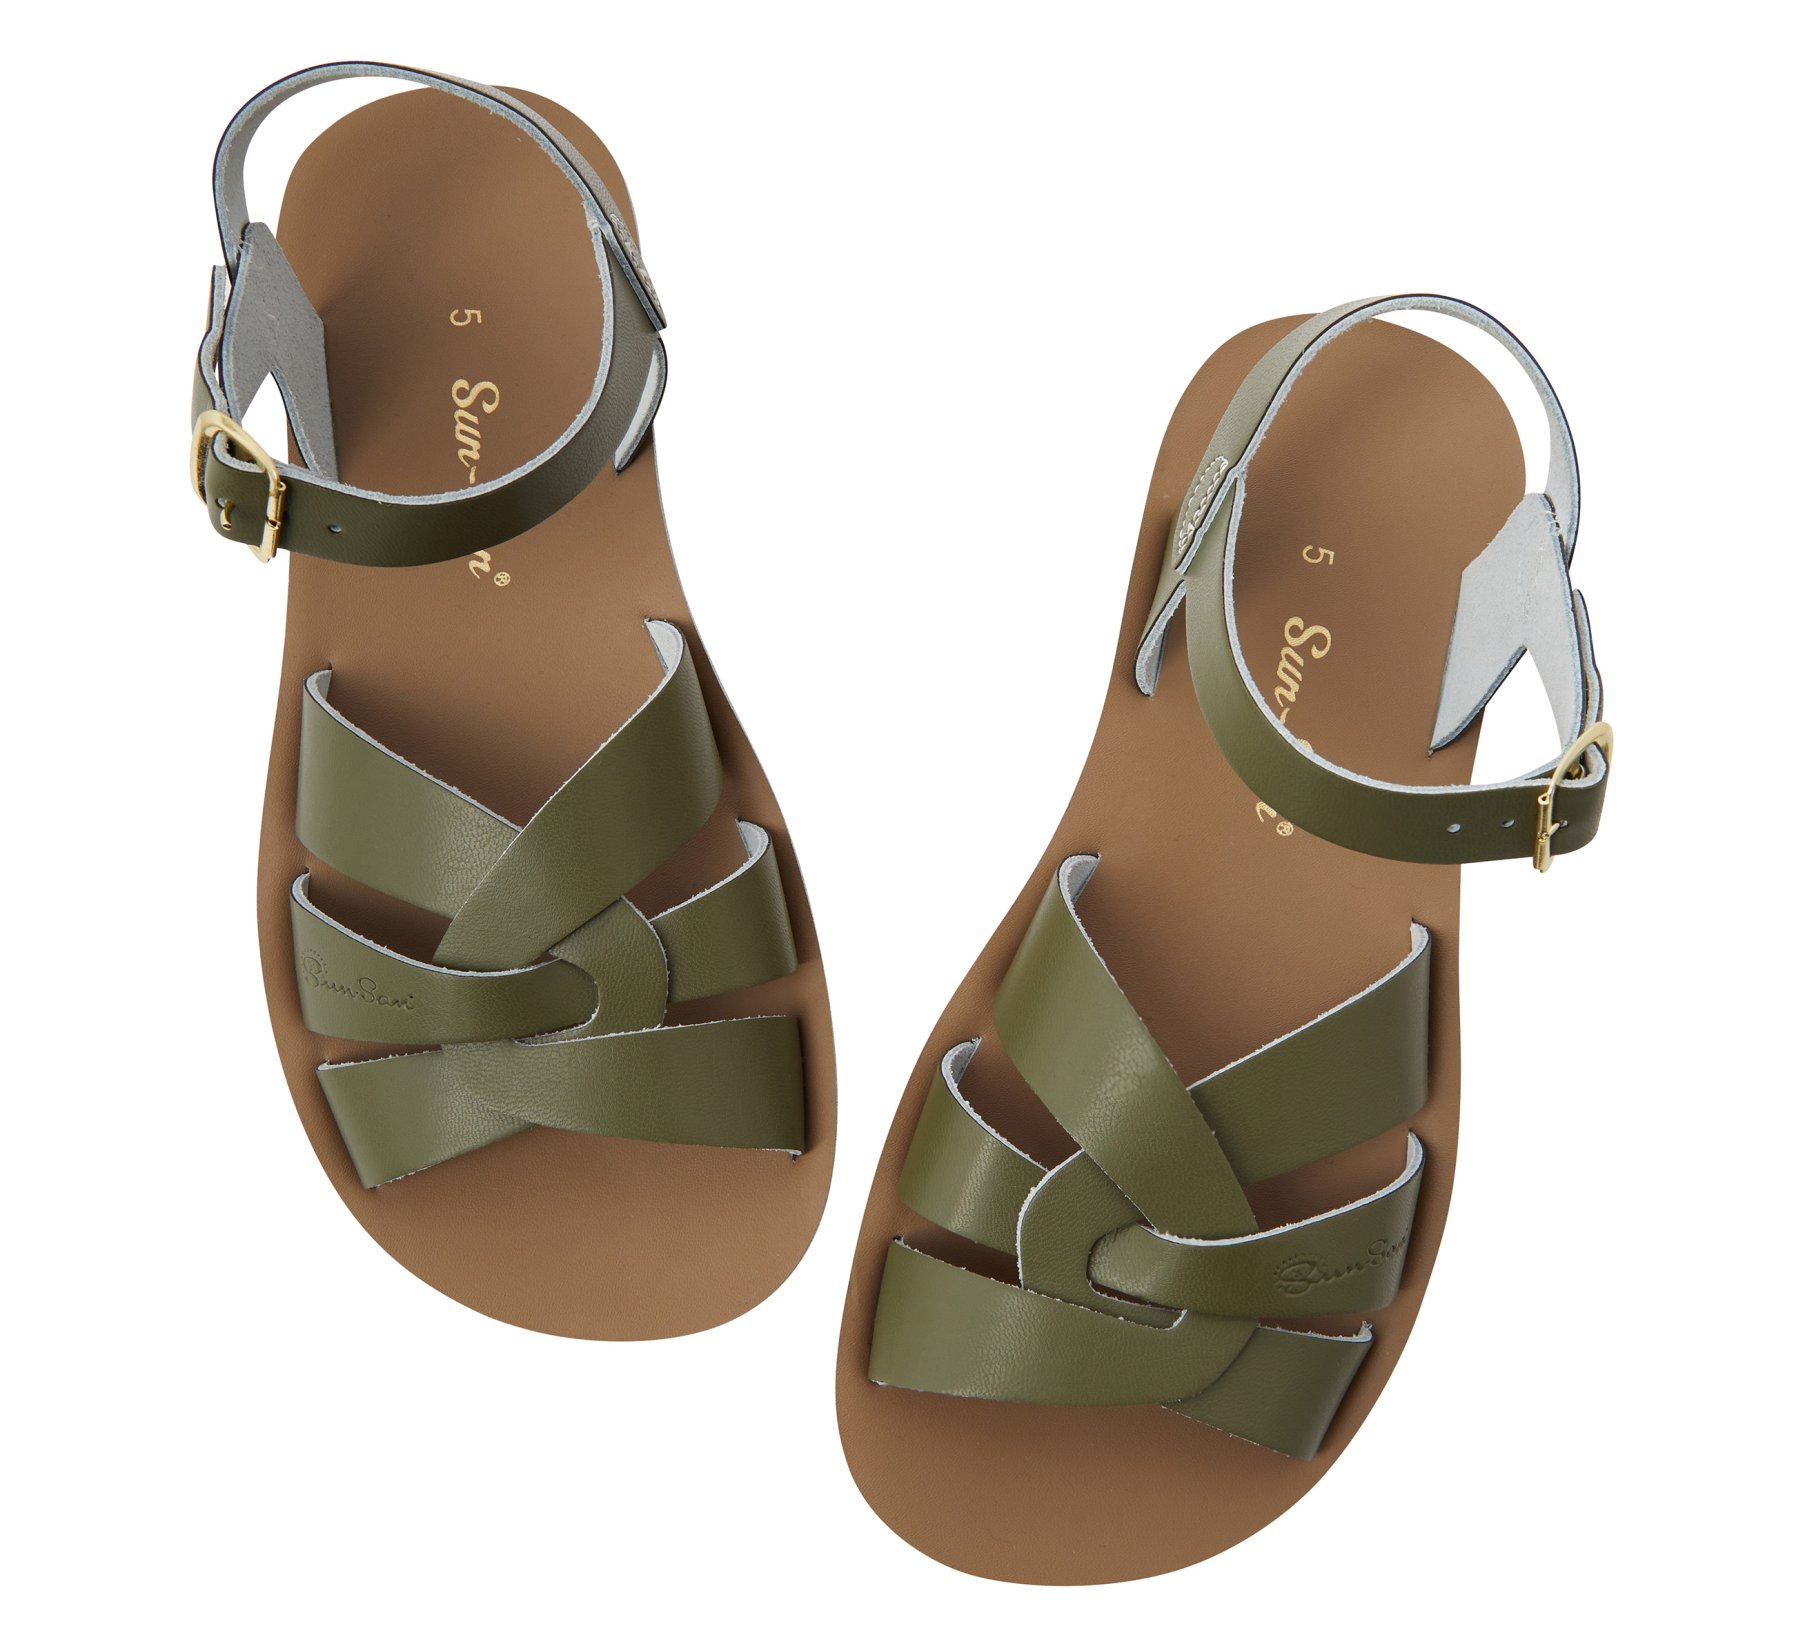 Swimmer Olive Sandal - Salt Water Sandals